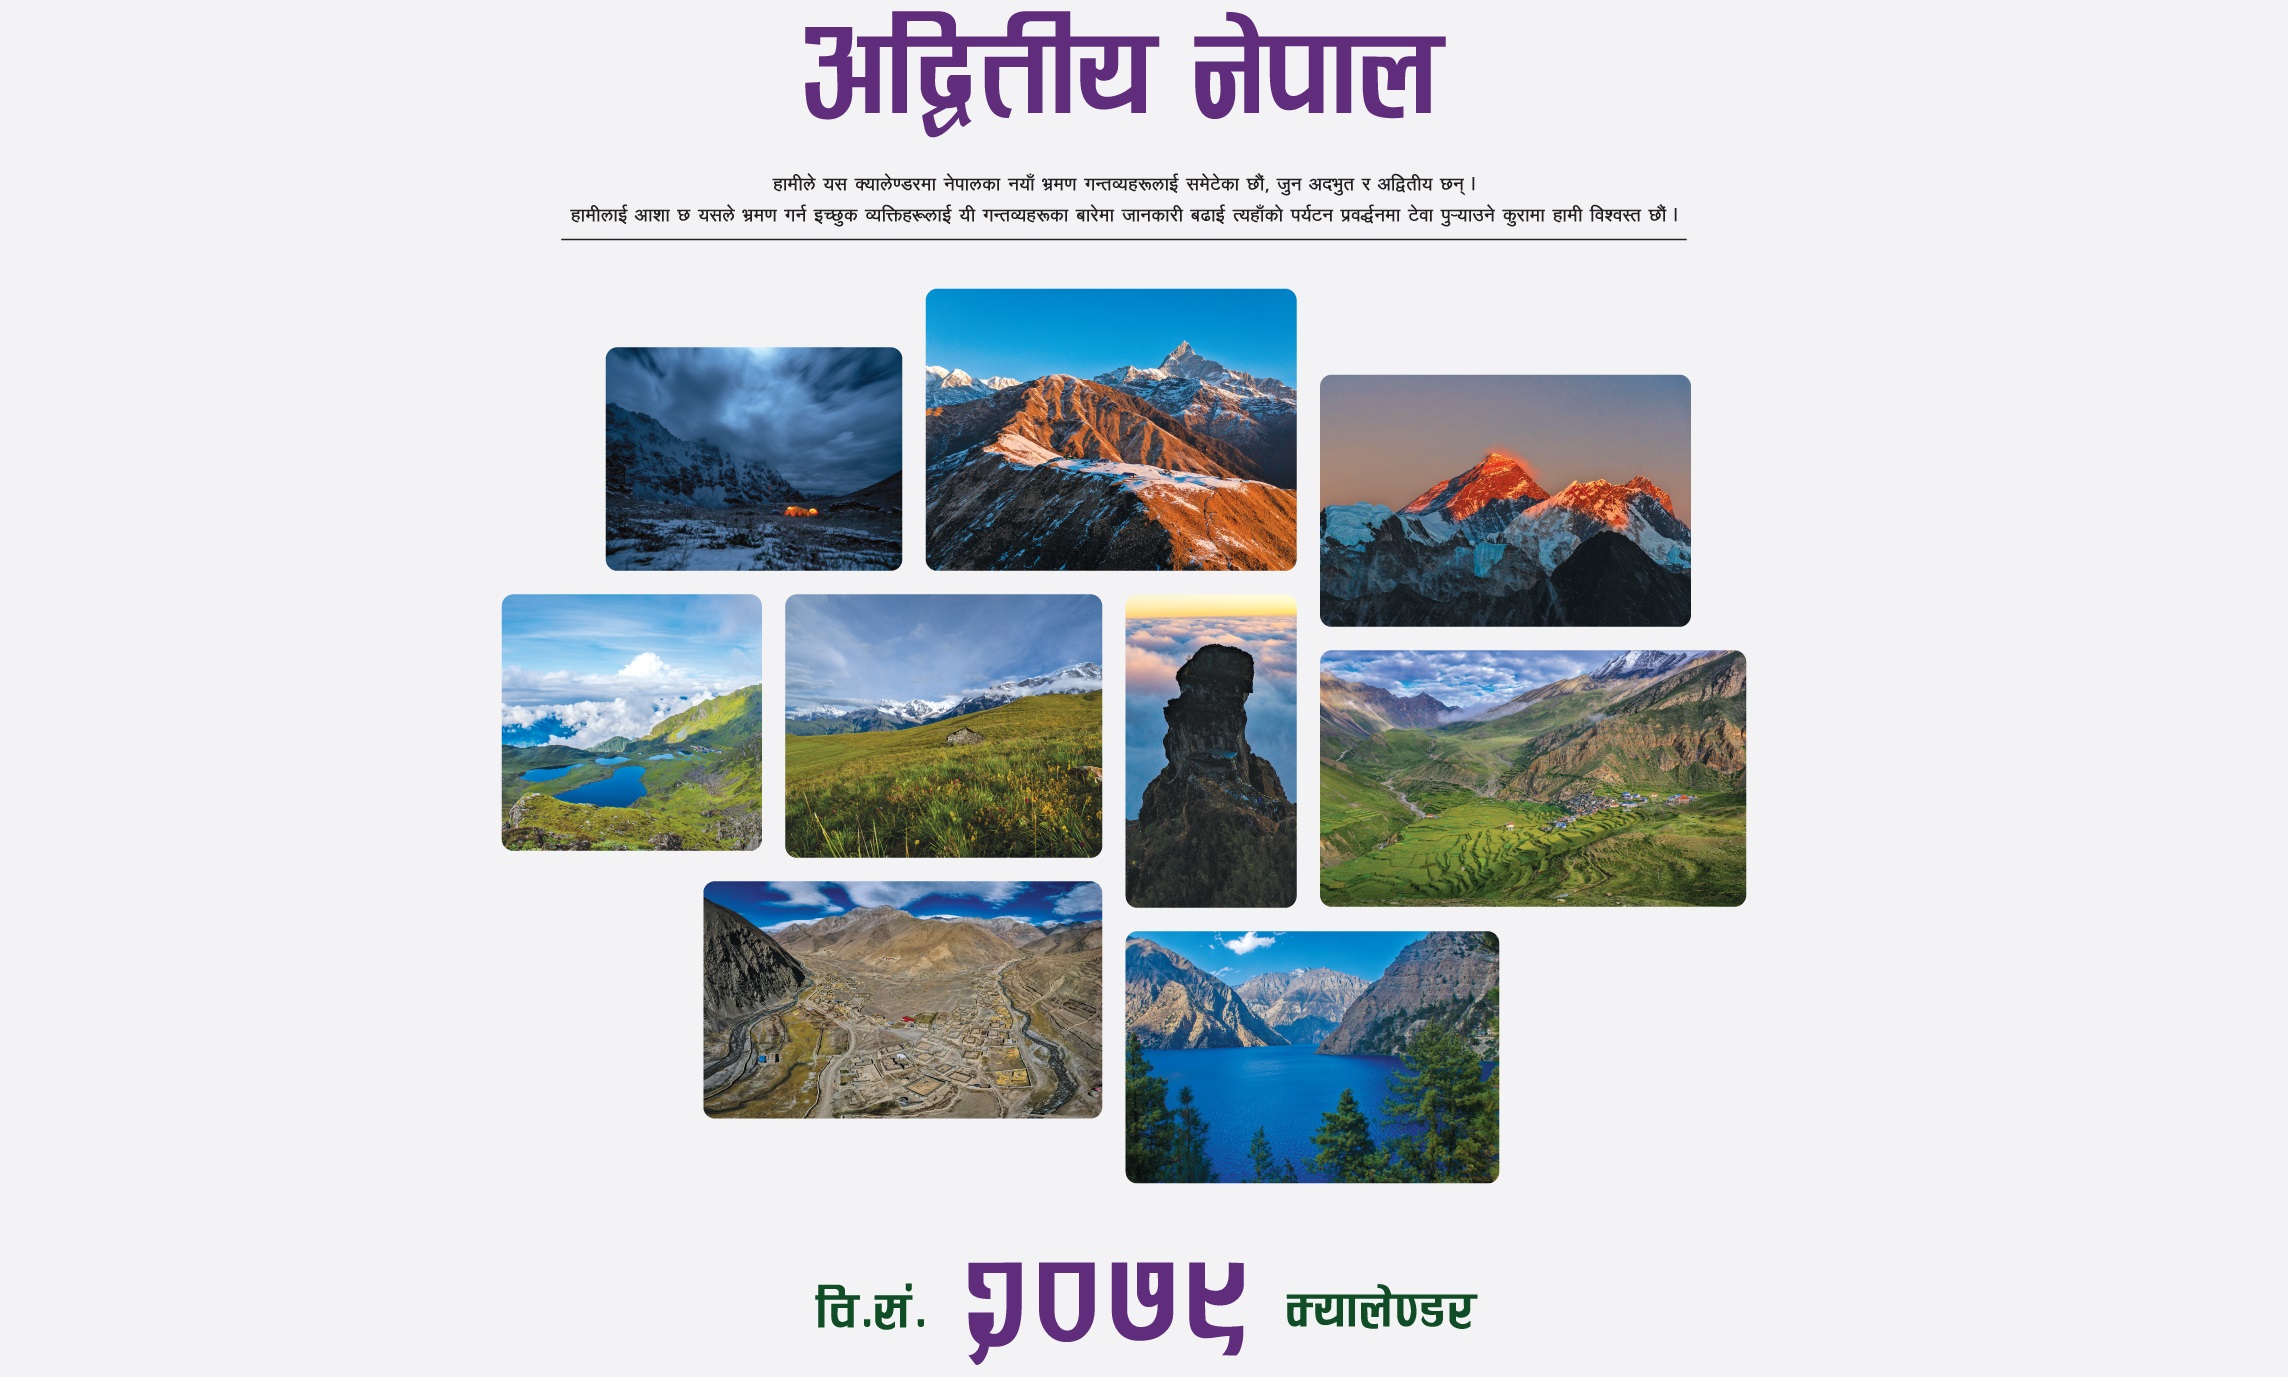 सिभिल बैंकको ‘अद्वितीय नेपाल’ शीर्षकमा क्यालेण्डर सार्वजनिक